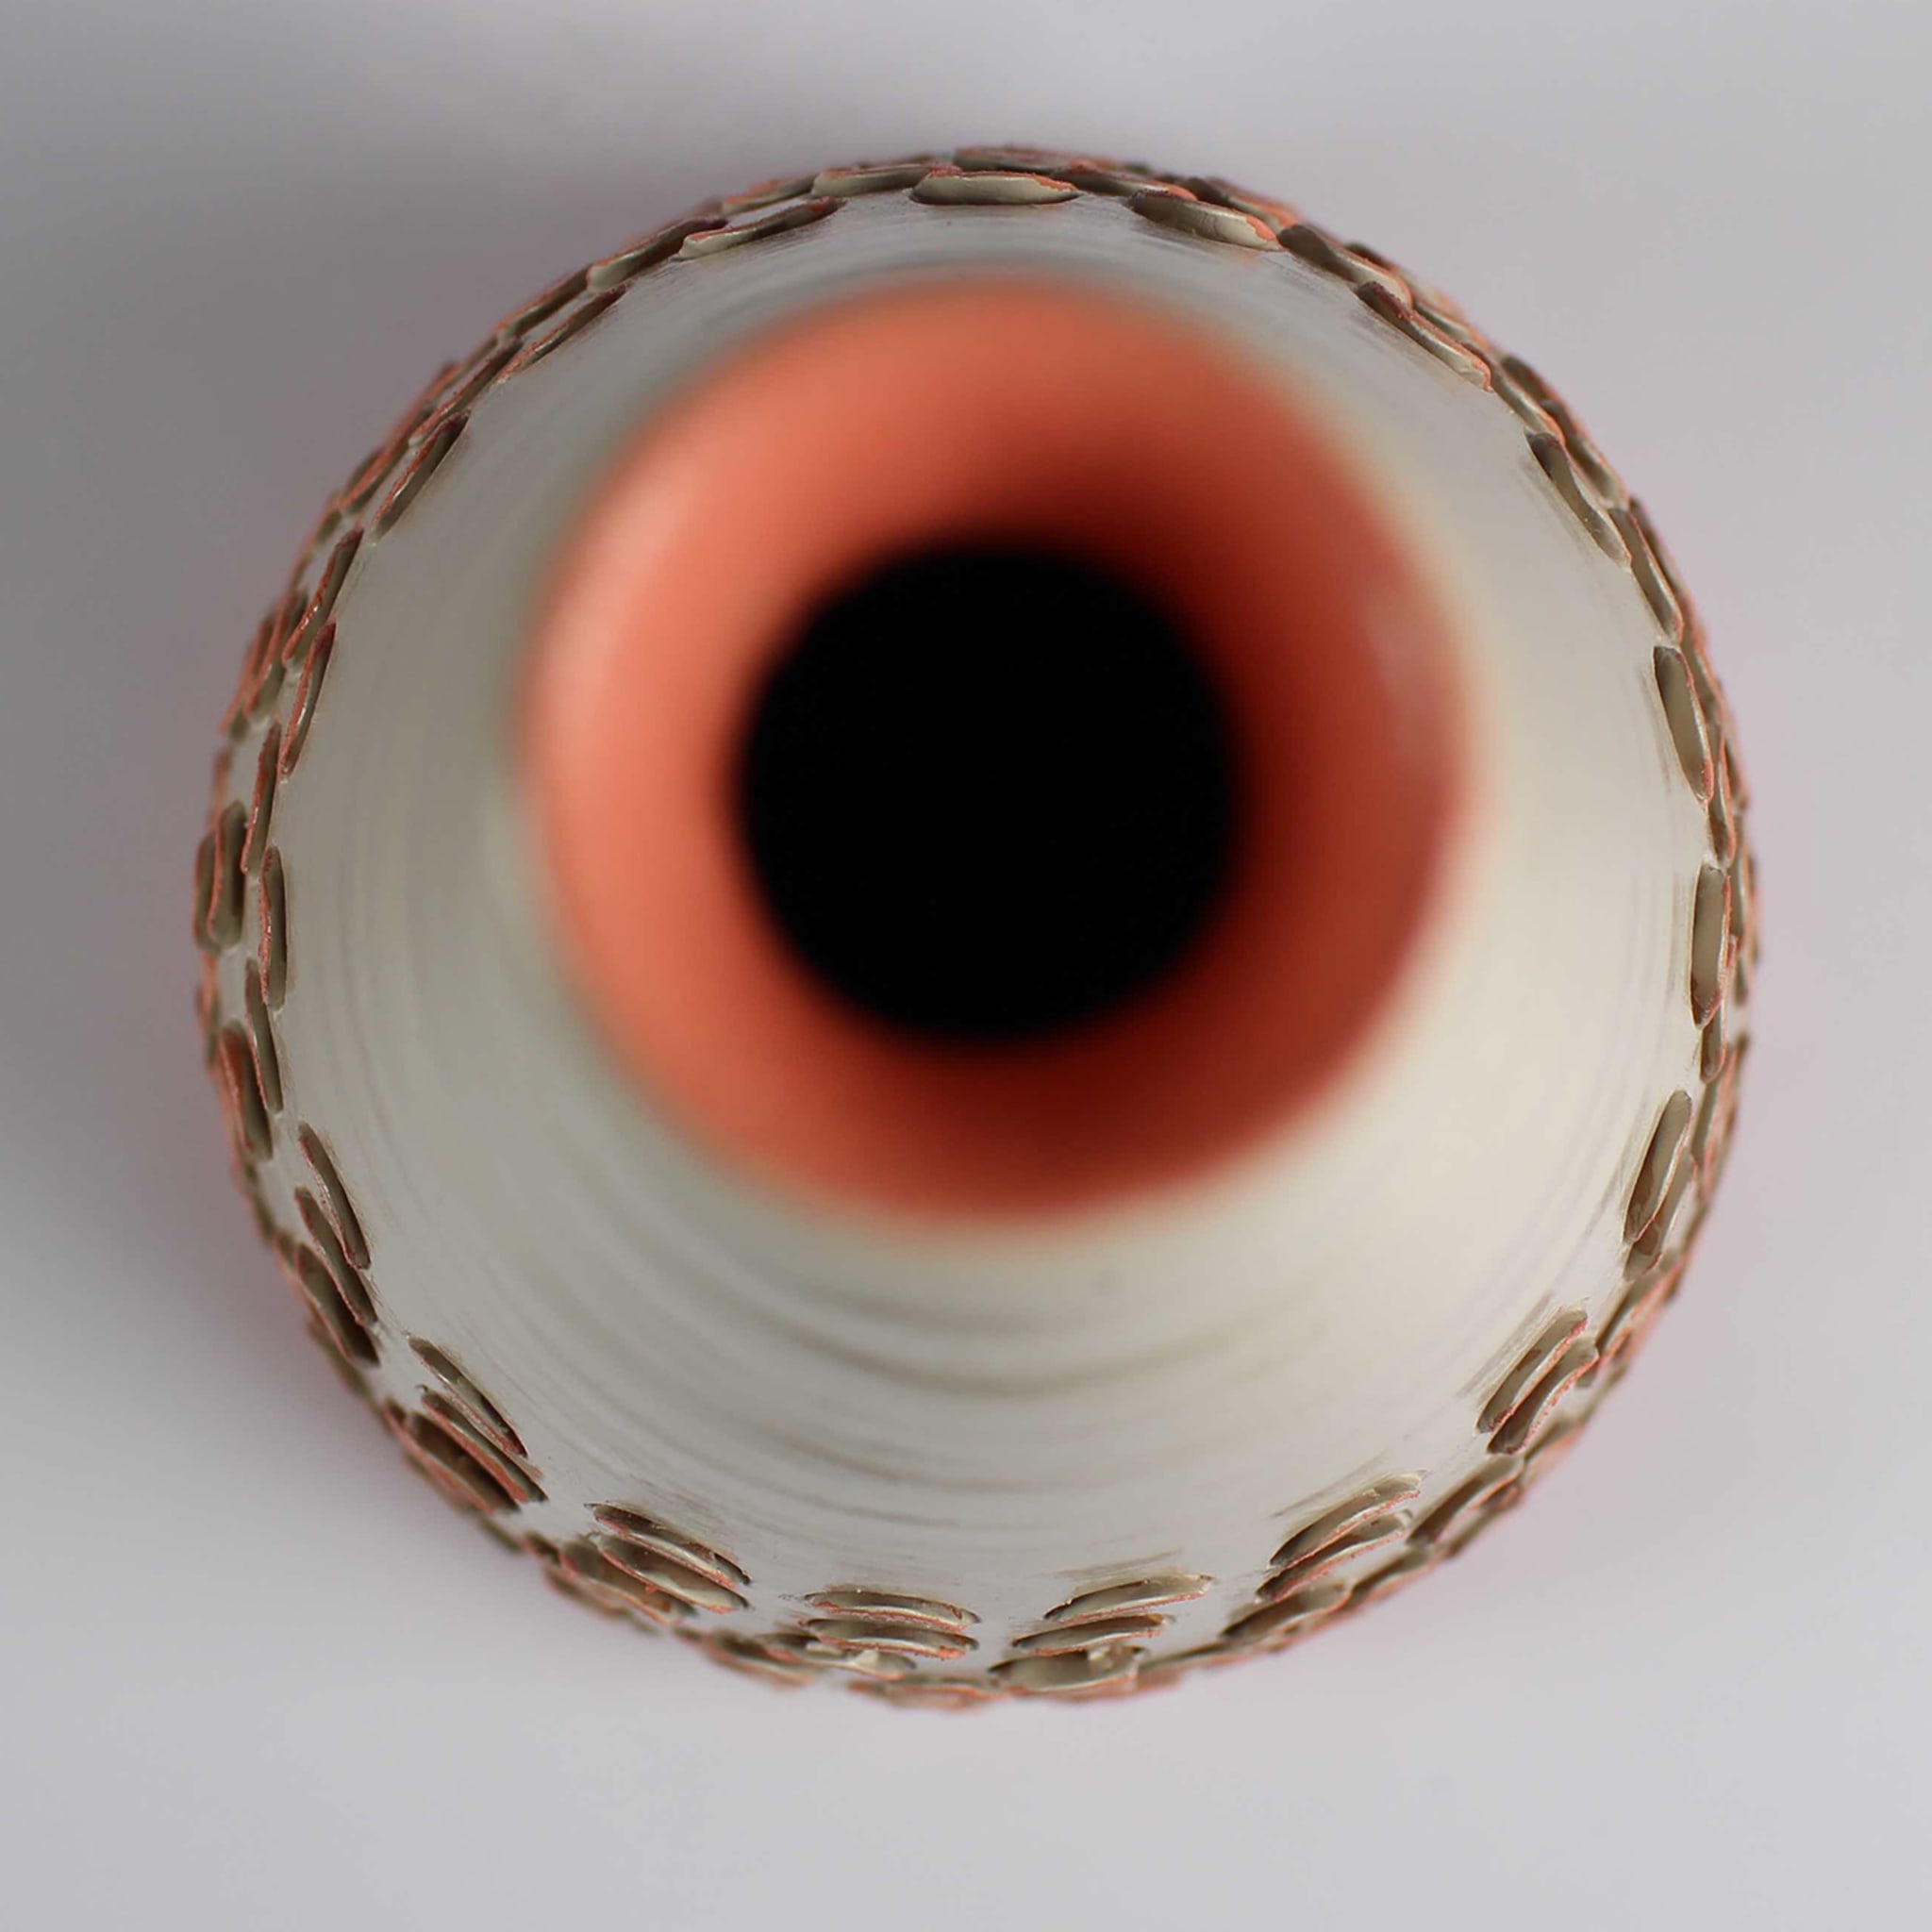 Conical Ecru & Orange Vase 21 by Mascia Meccani - Alternative view 1